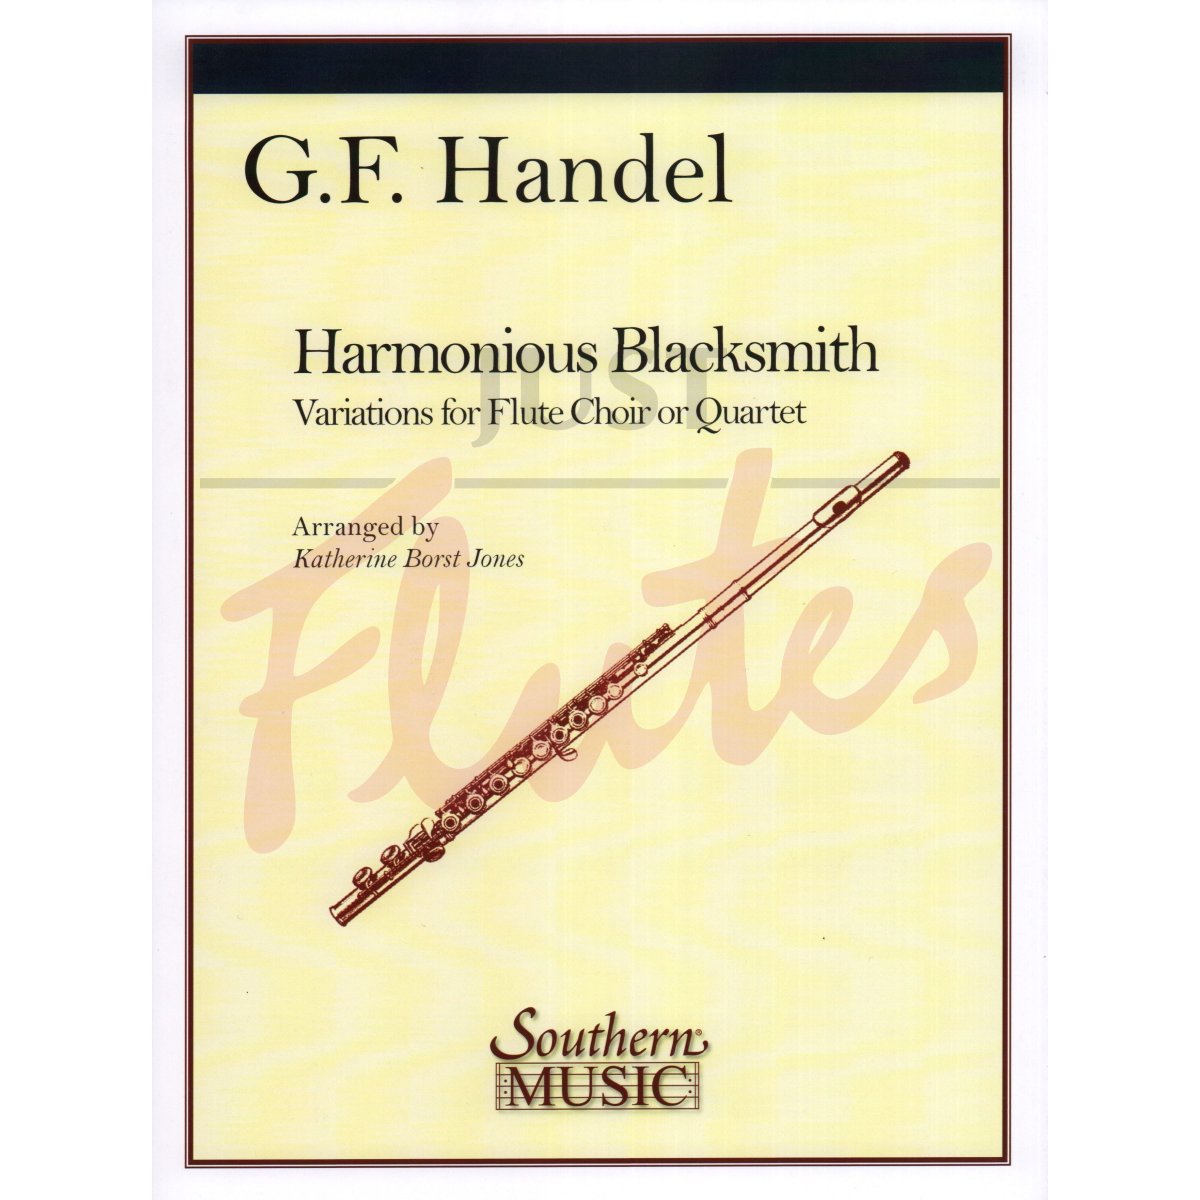 Harmonious Blacksmith for Flute Quartet or Flute Choir